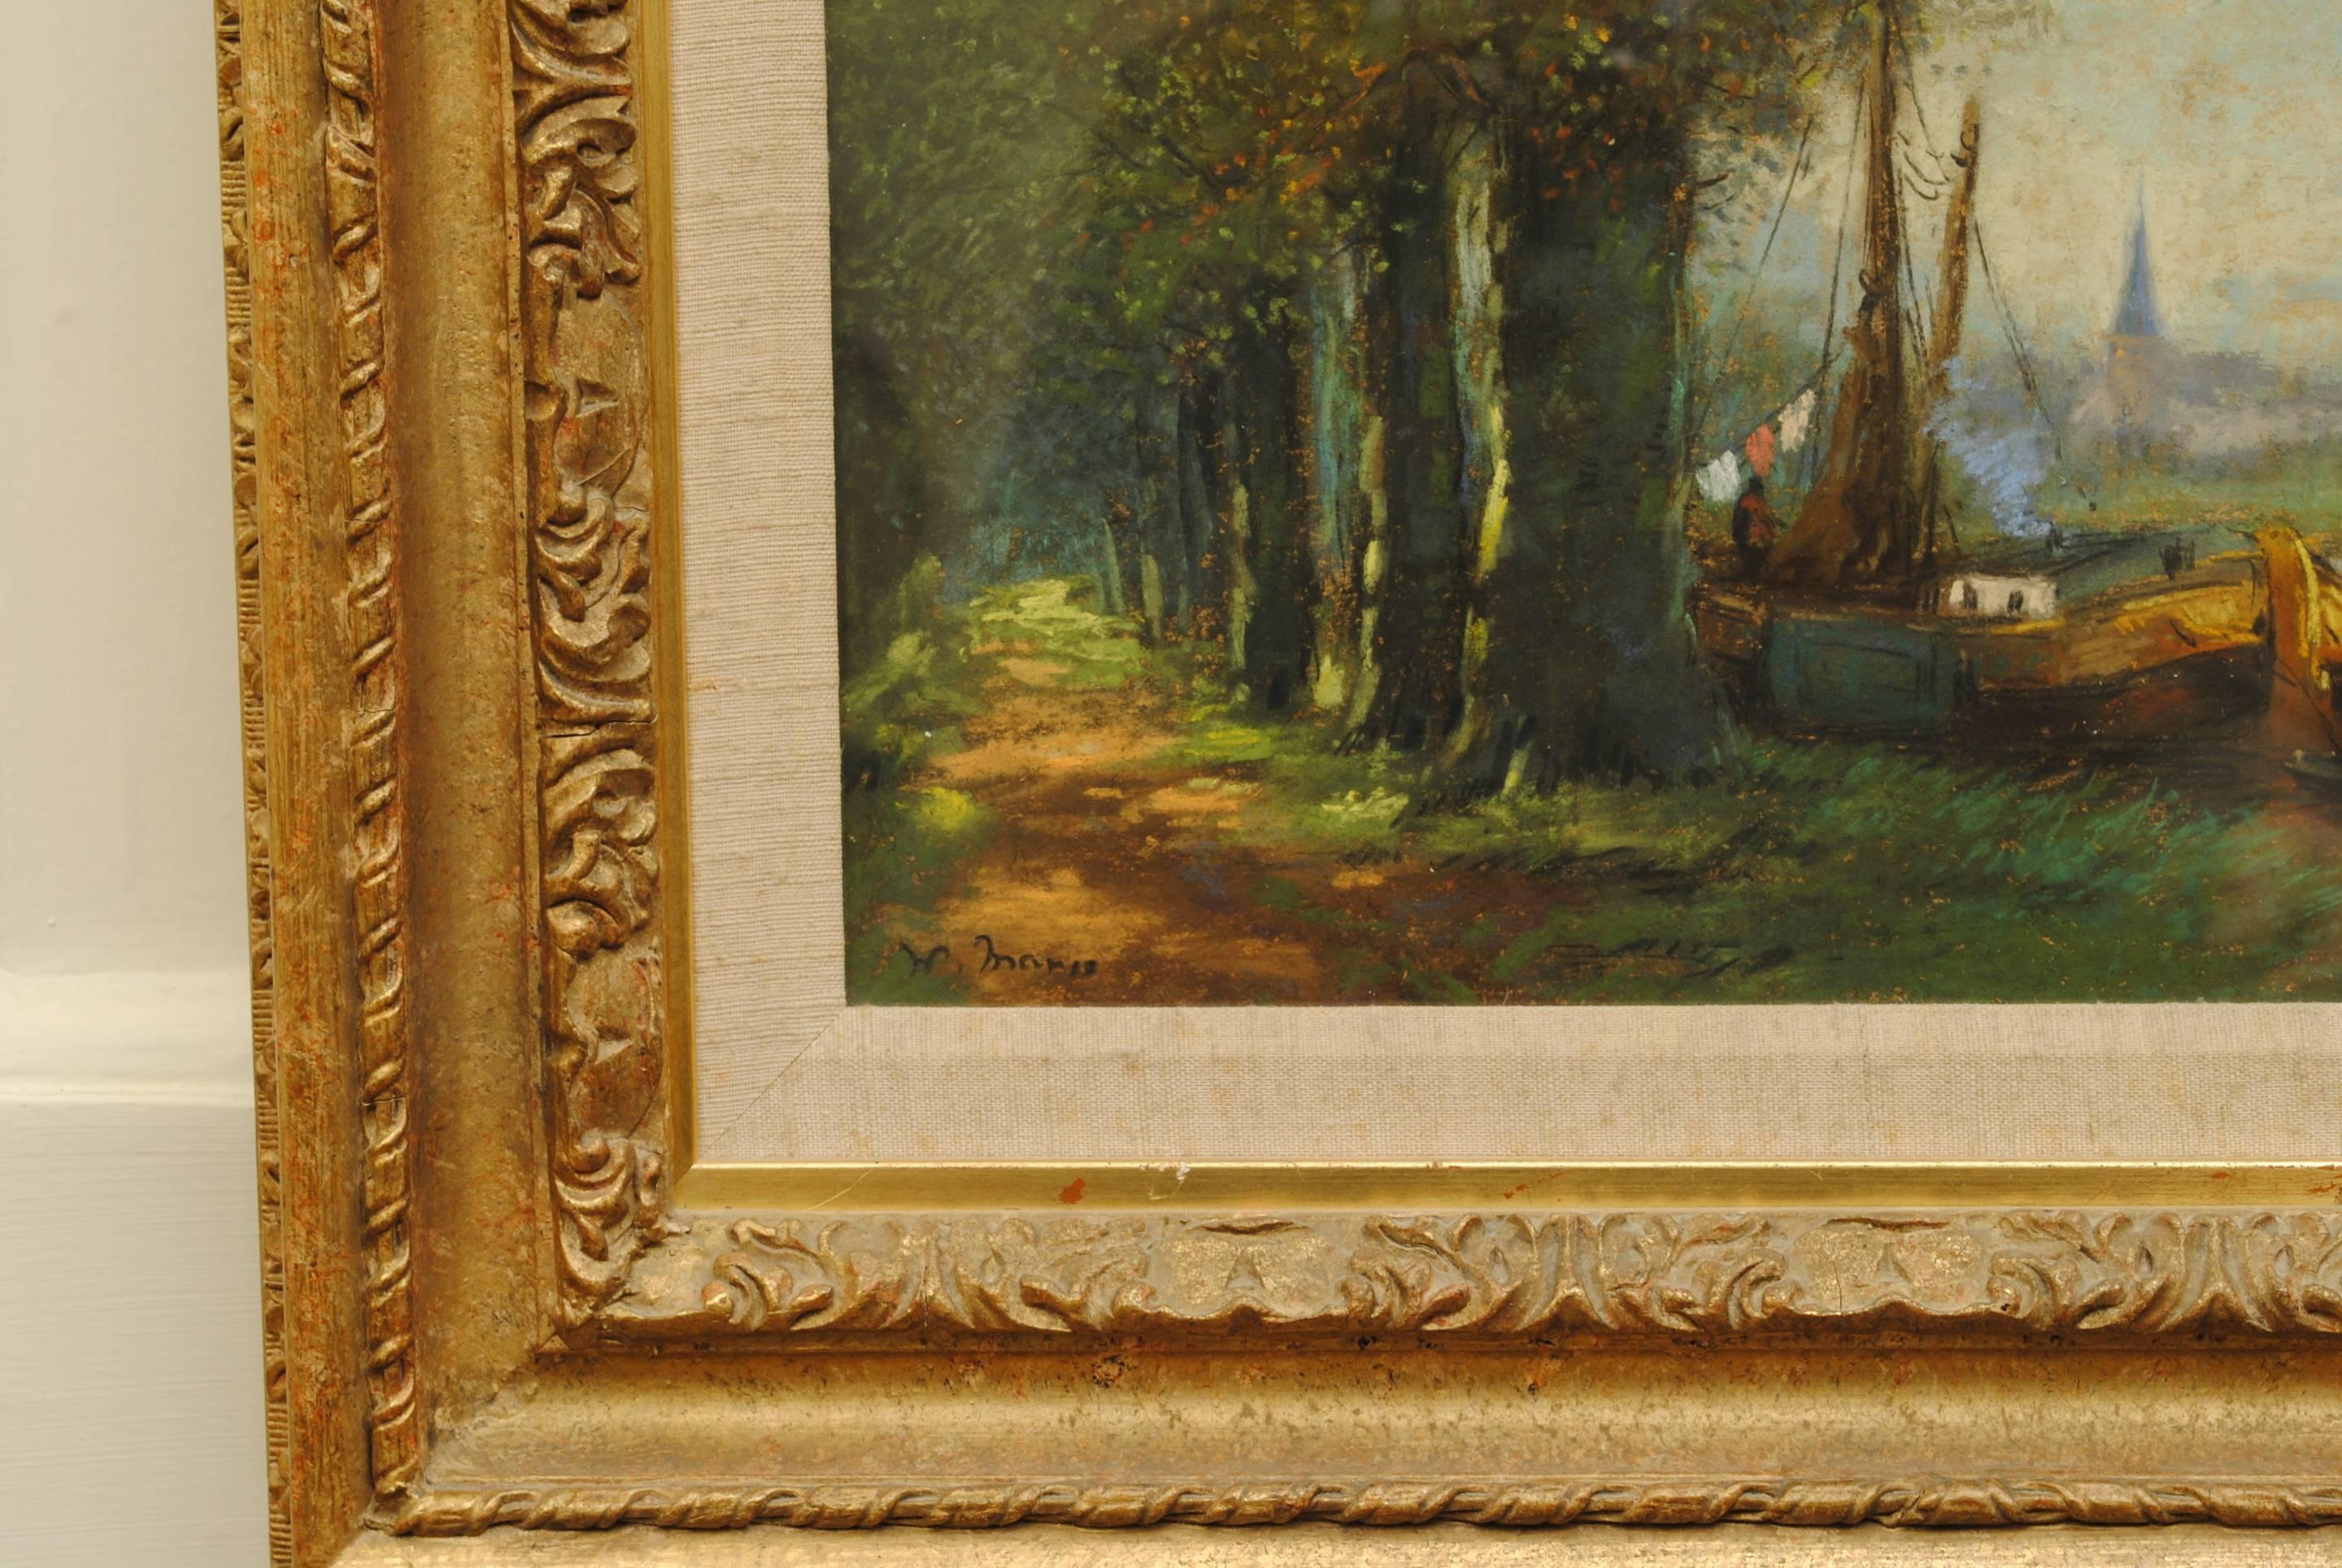 Une peinture à l'huile de la fin du 19e siècle représentant une scène de cannelier hollandais par Marris.